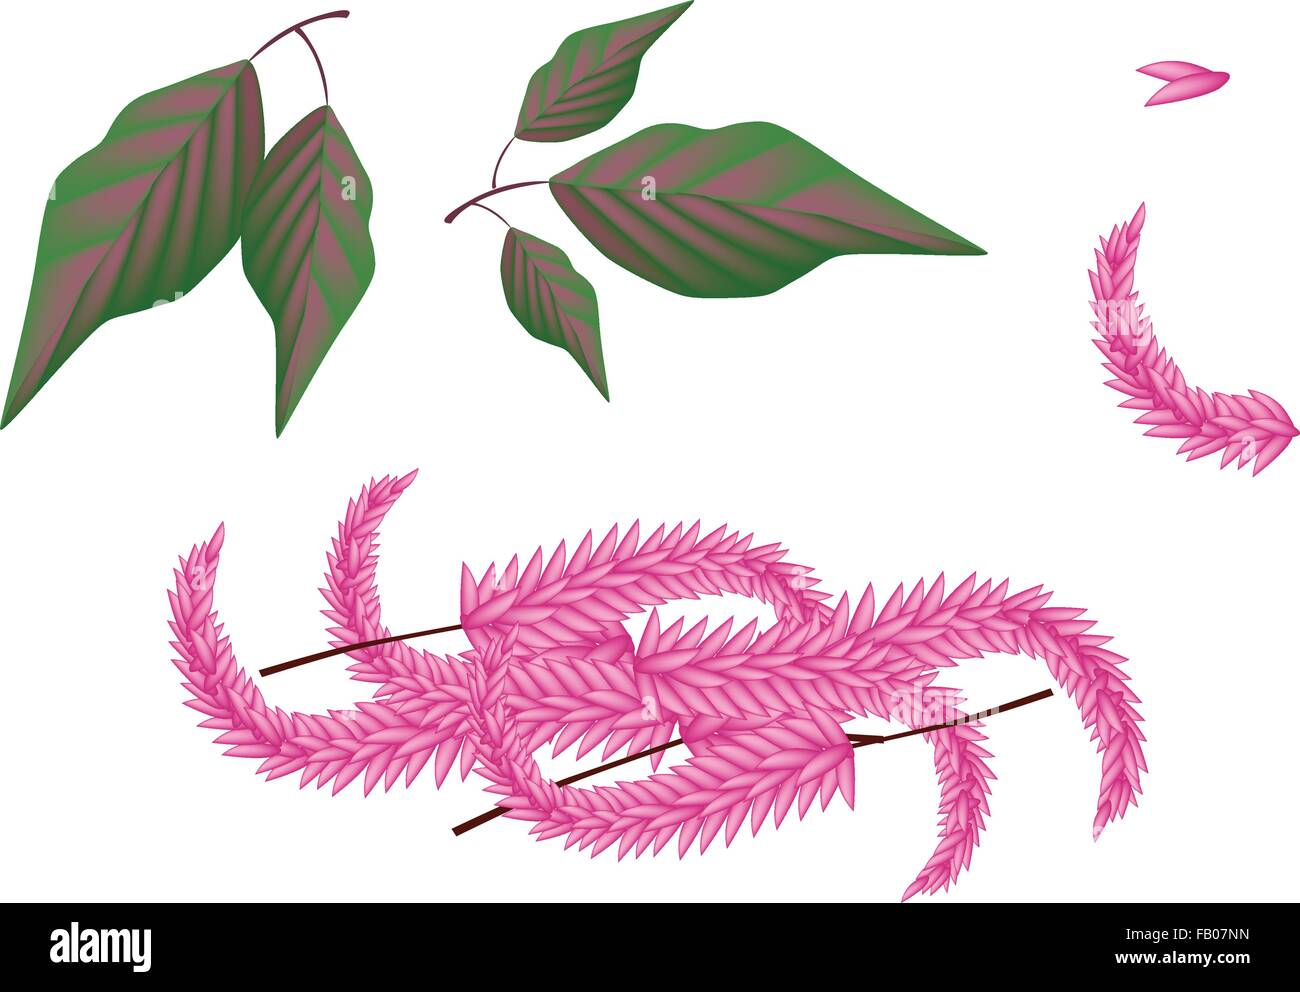 De légumes et d'herbes, une illustration des parties de l'Amarante Amaranthus cruentus frais ou des plantes, des fleurs et des feuilles isolées sur fond blanc Illustration de Vecteur